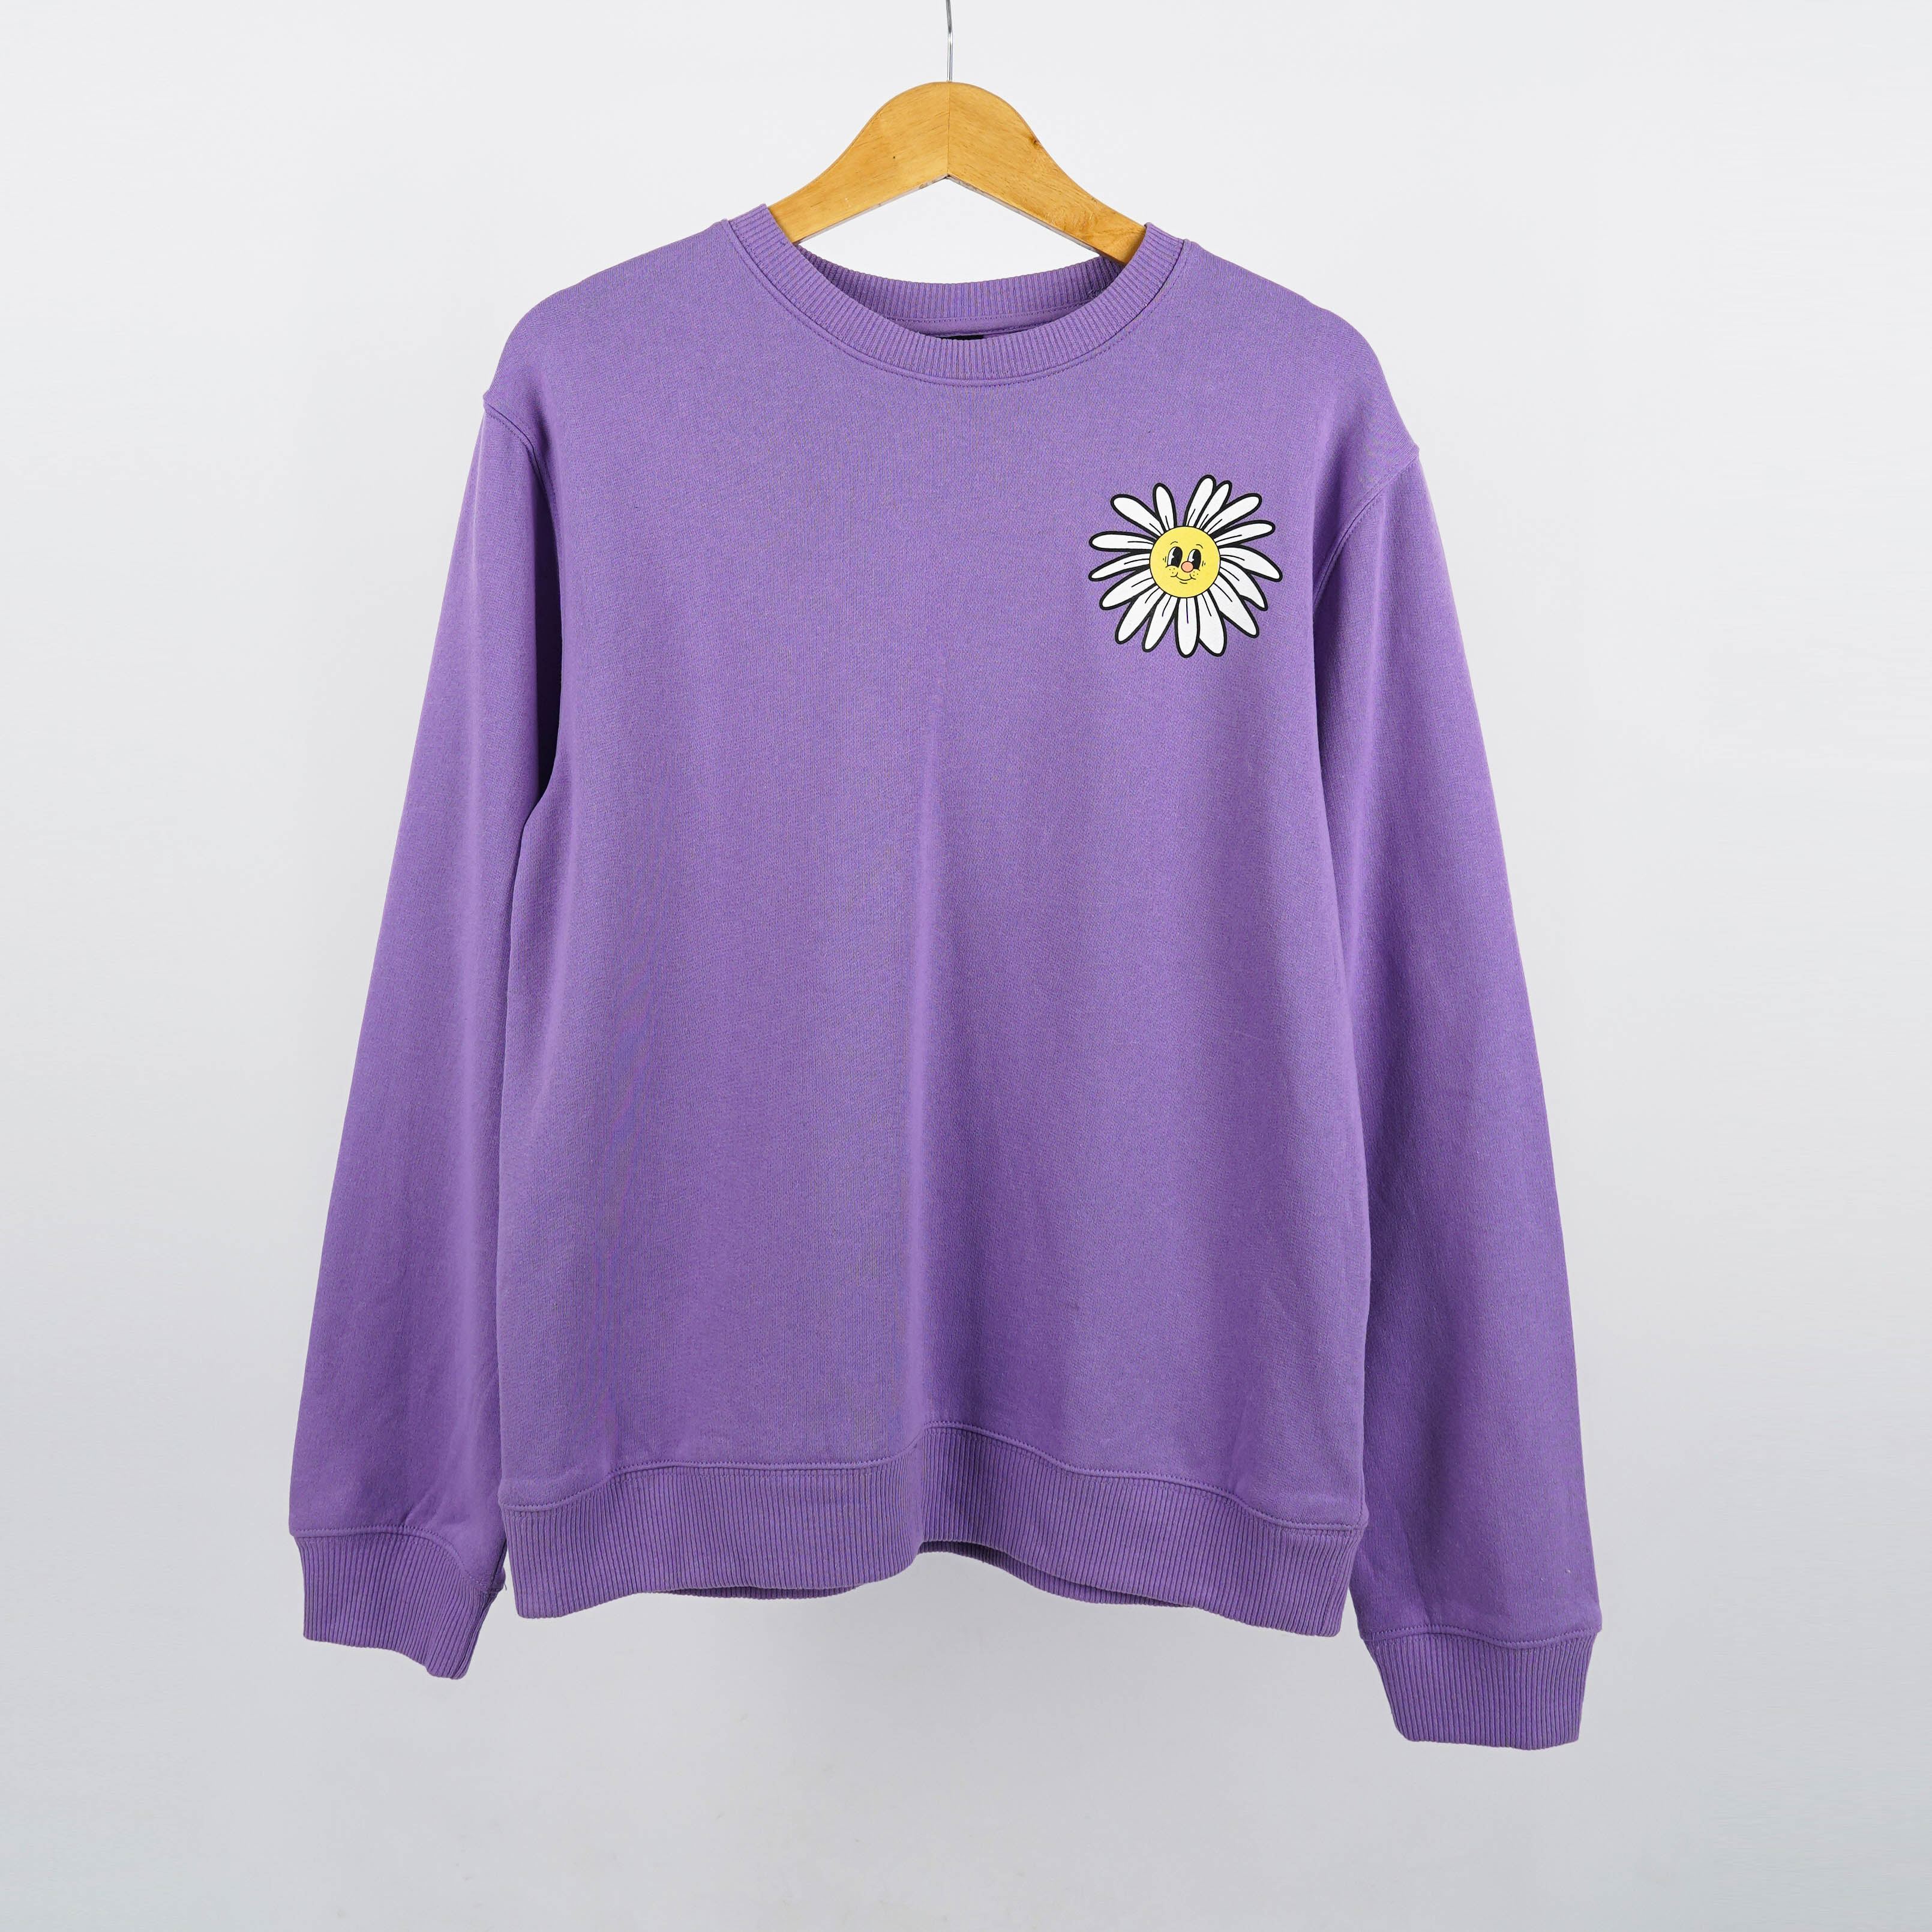 Sweatshirt Casual Wanita Tersedia 2 Warna [SWCMR 01-02]